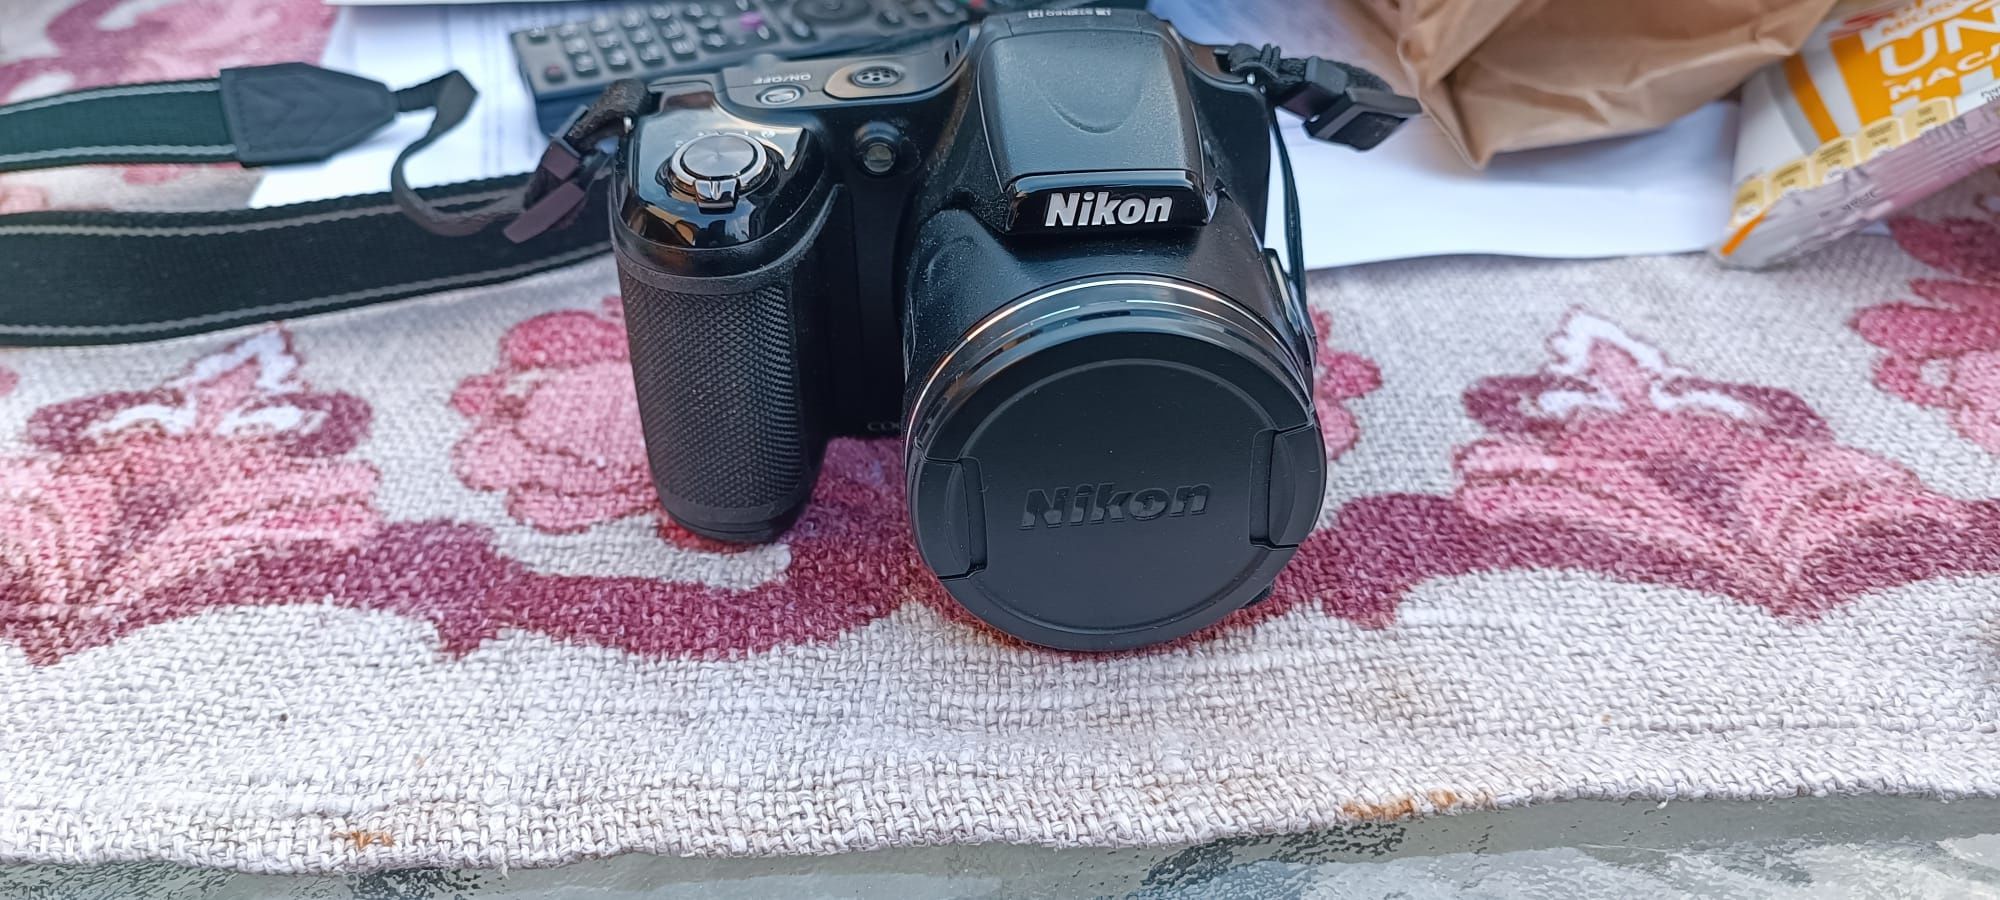 Nikon colpix L 820